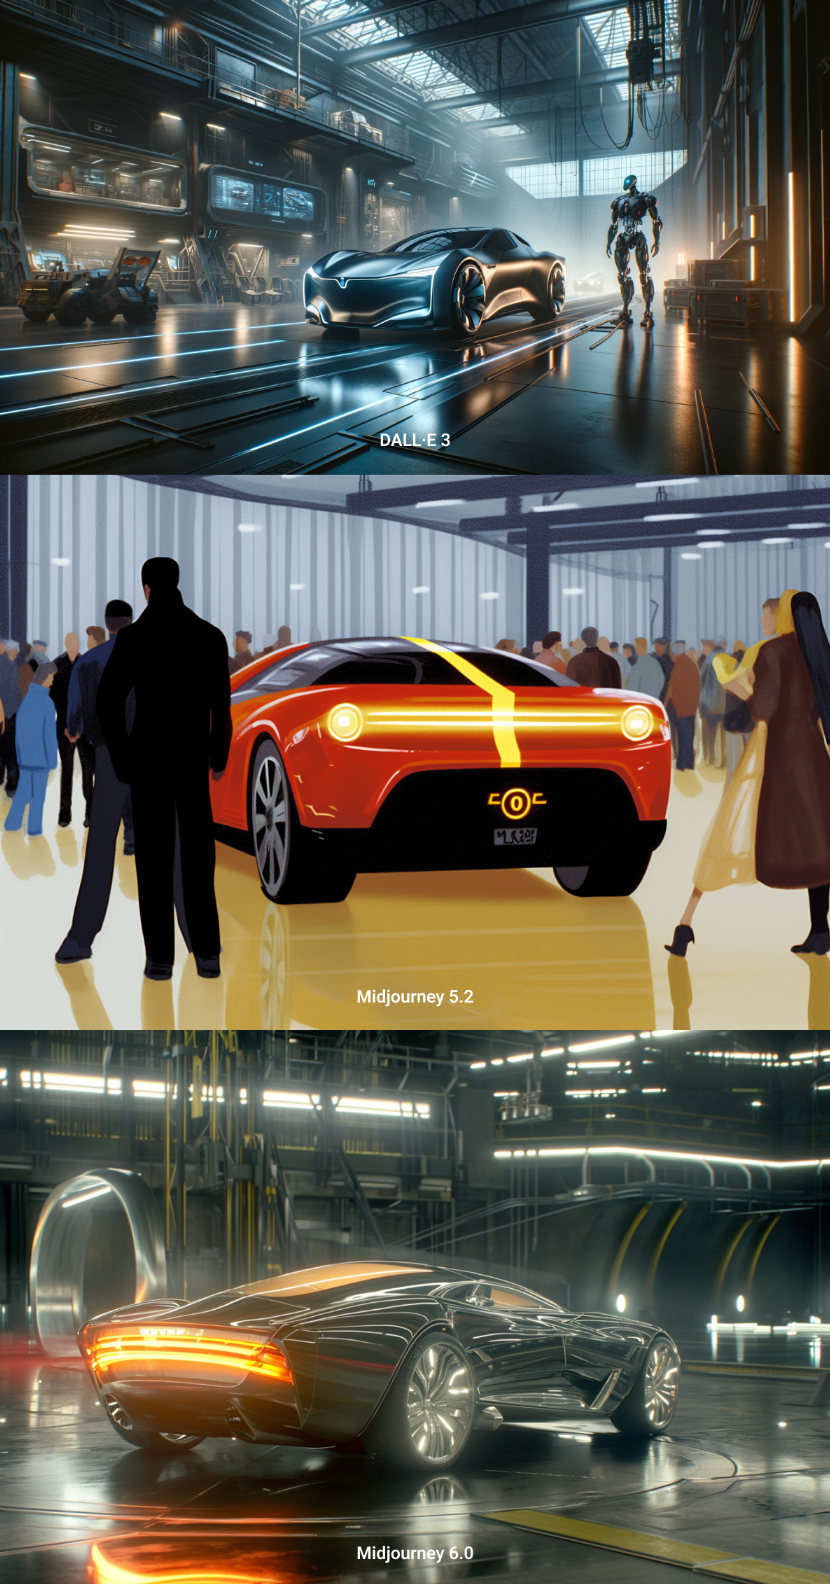 Syd Mead design, futuristic car, in the futuristic hangar, dystopia, cyborg, cinematic lighting*